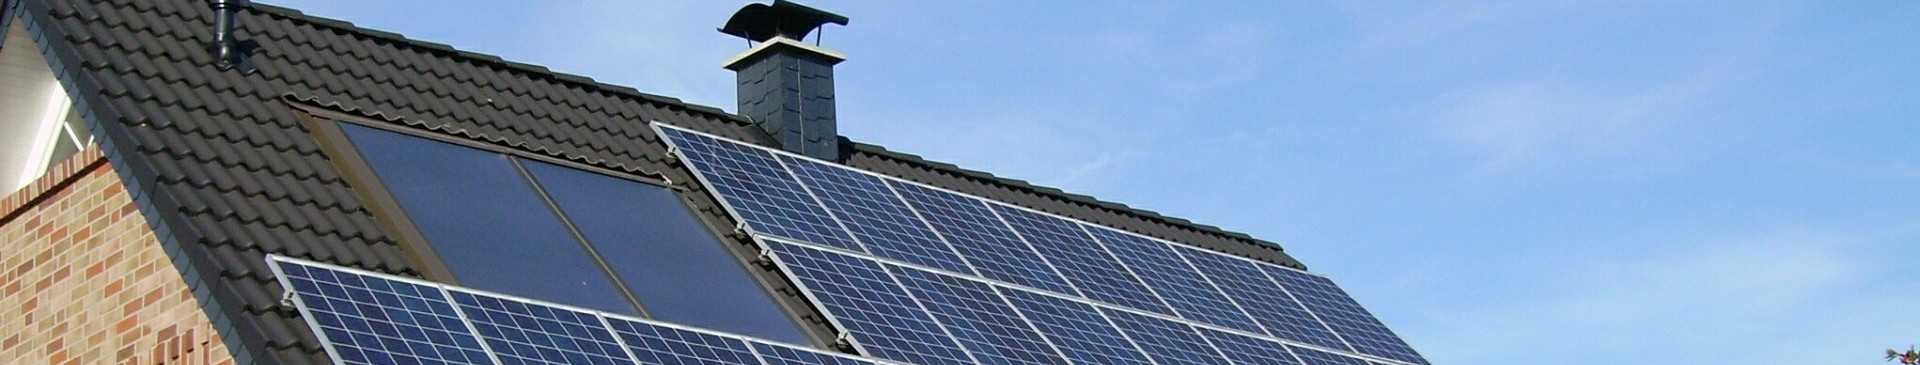 Energia Fotovoltaica Para Sua Casa